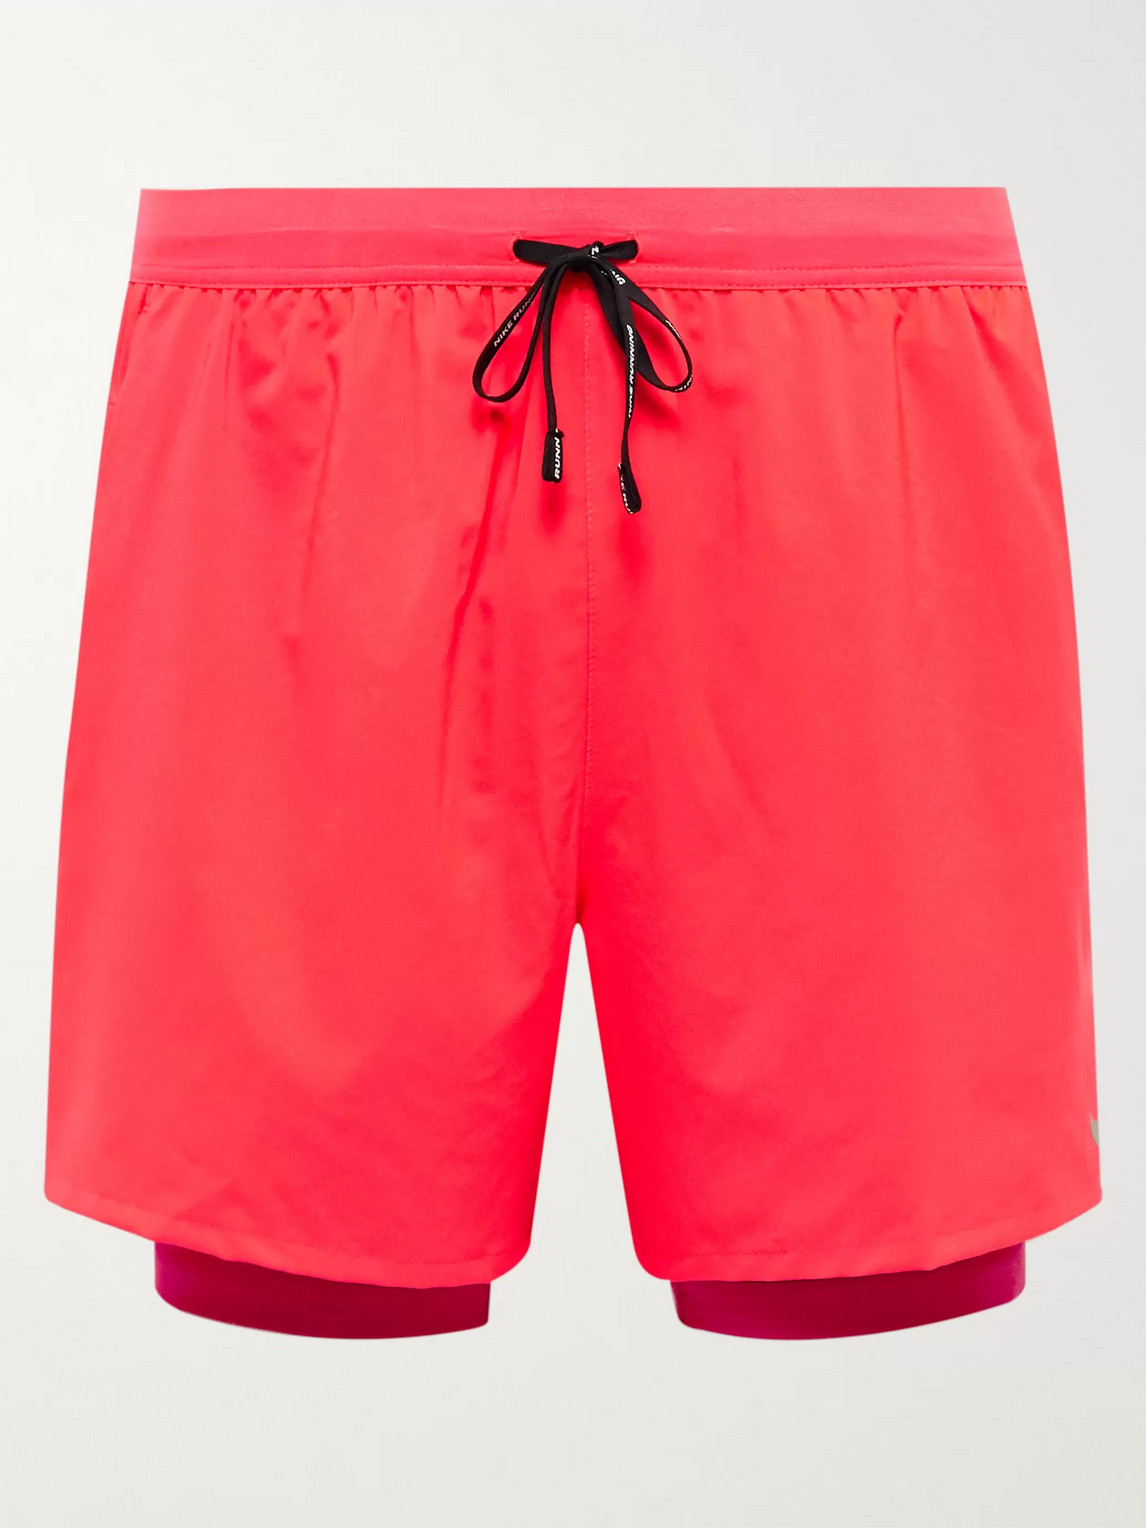 Nike Stride 2-in-1 Flex Dri-fit Shorts In Red